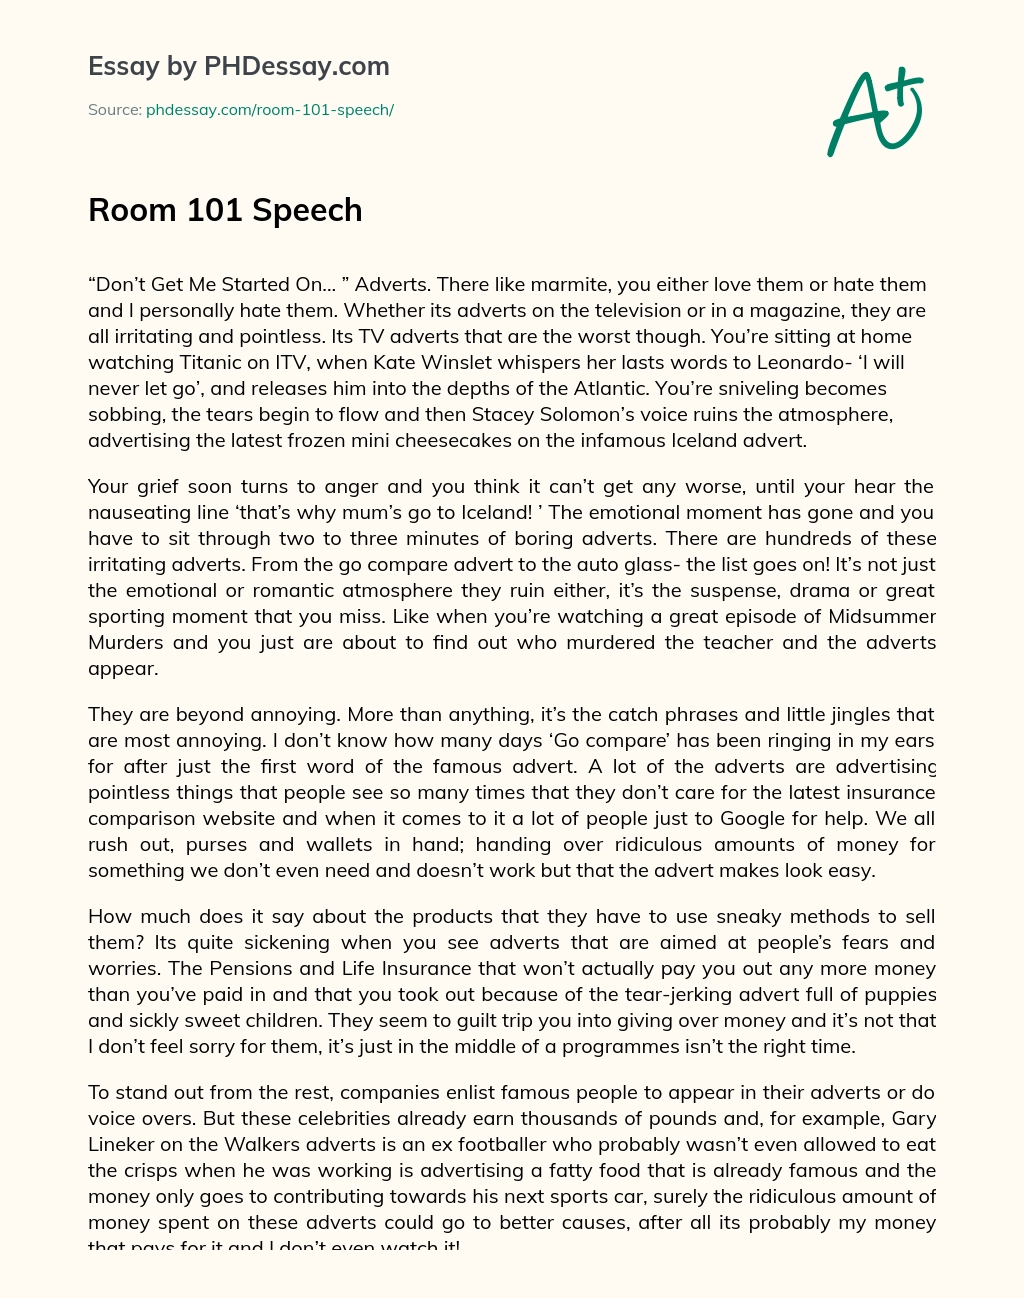 Room 101 Speech essay